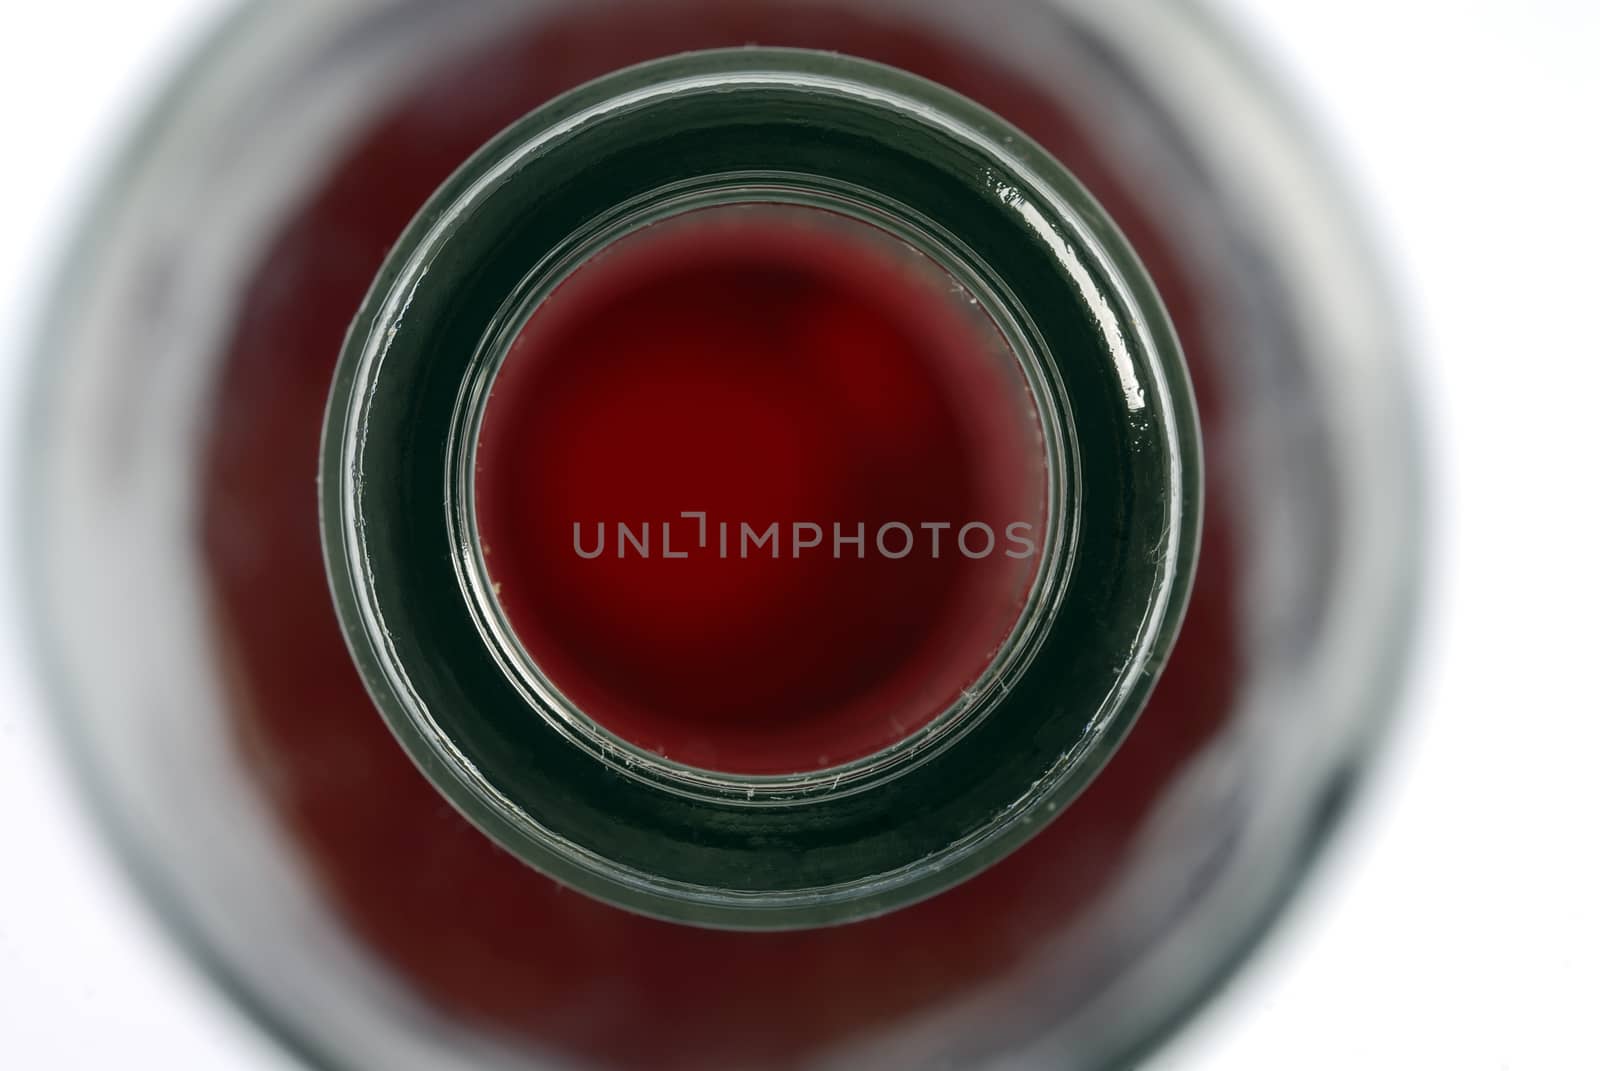 Bottleneck, bottle of wine, red wine by jalonsohu@gmail.com